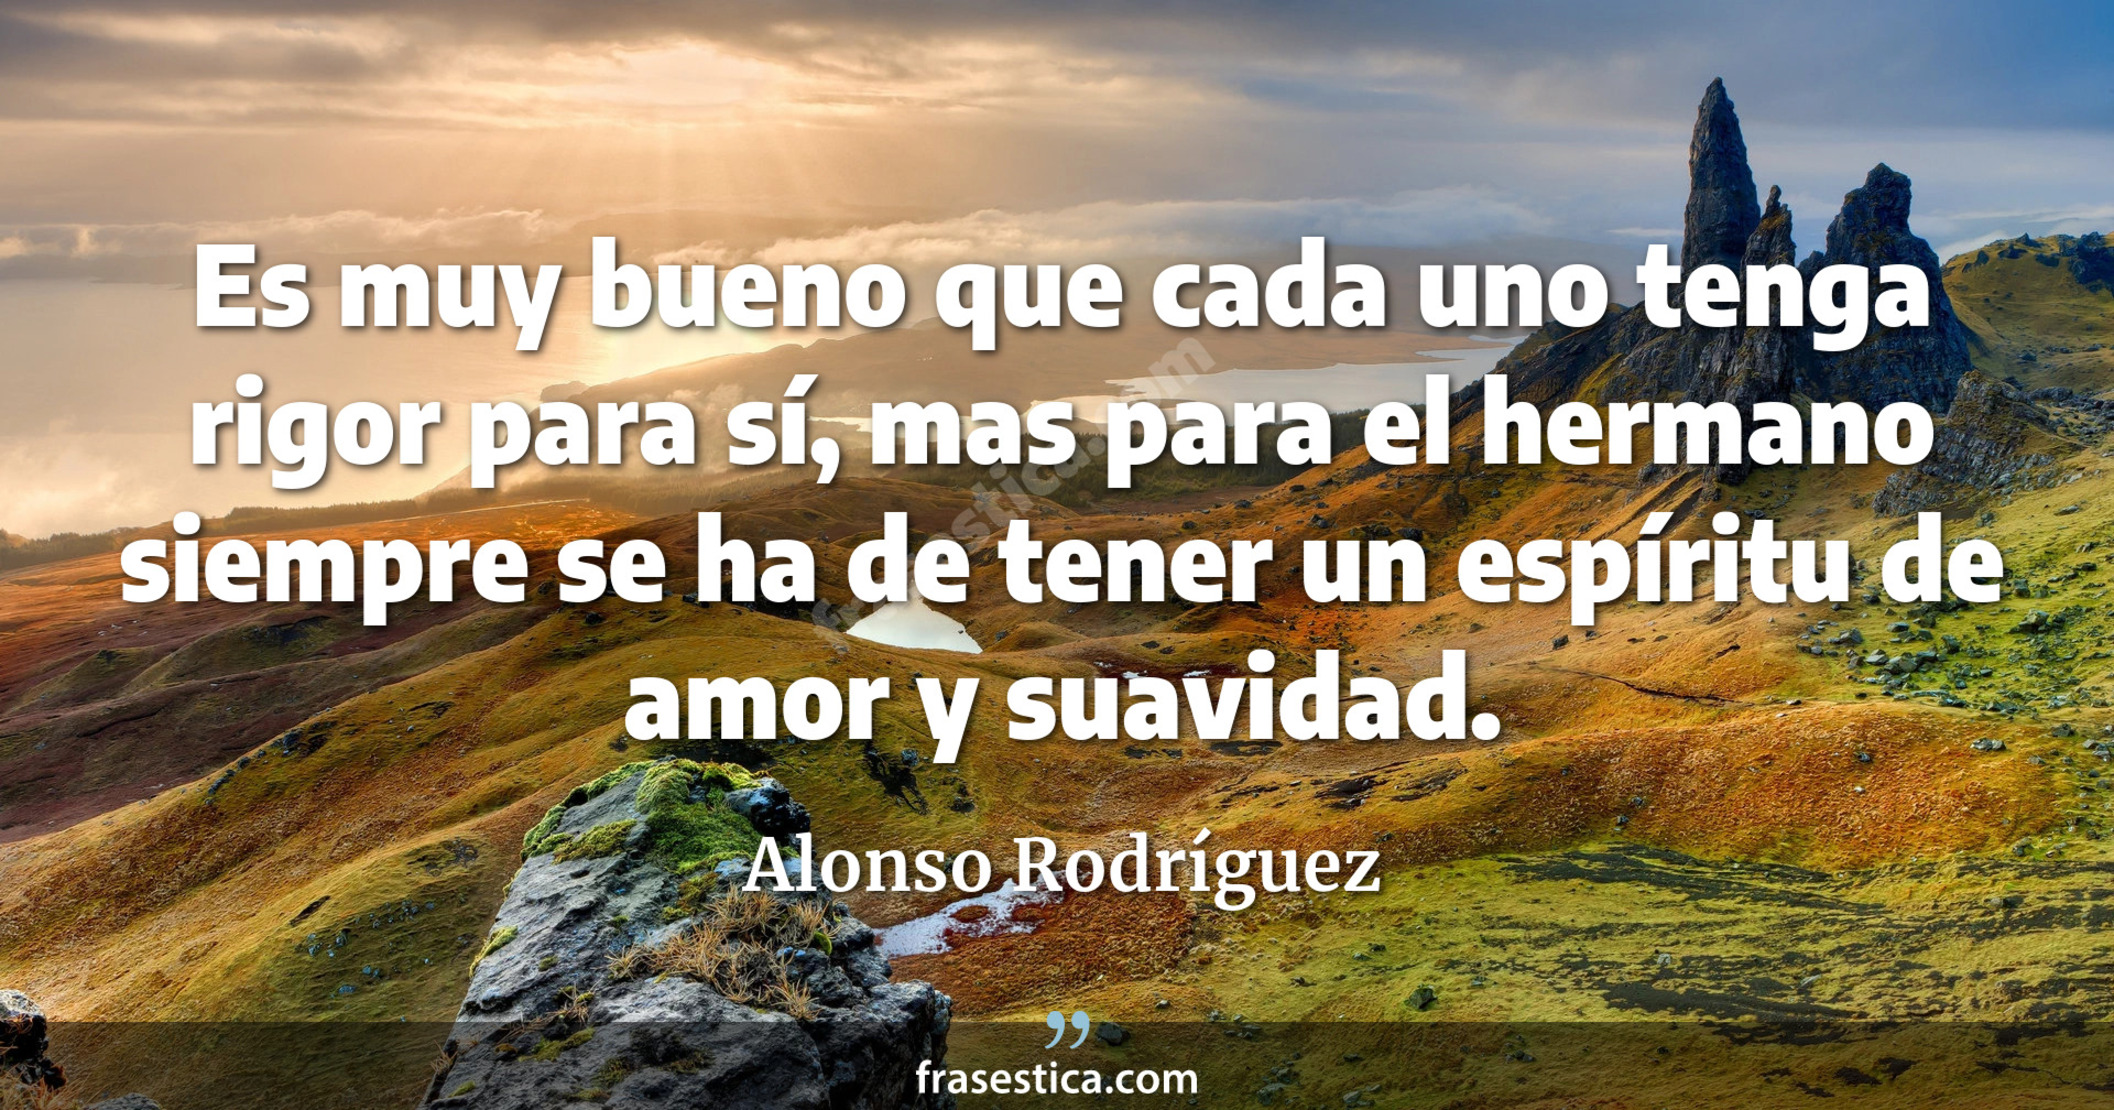 Es muy bueno que cada uno tenga rigor para sí, mas para el hermano siempre se ha de tener un espíritu de amor y suavidad. - Alonso Rodríguez